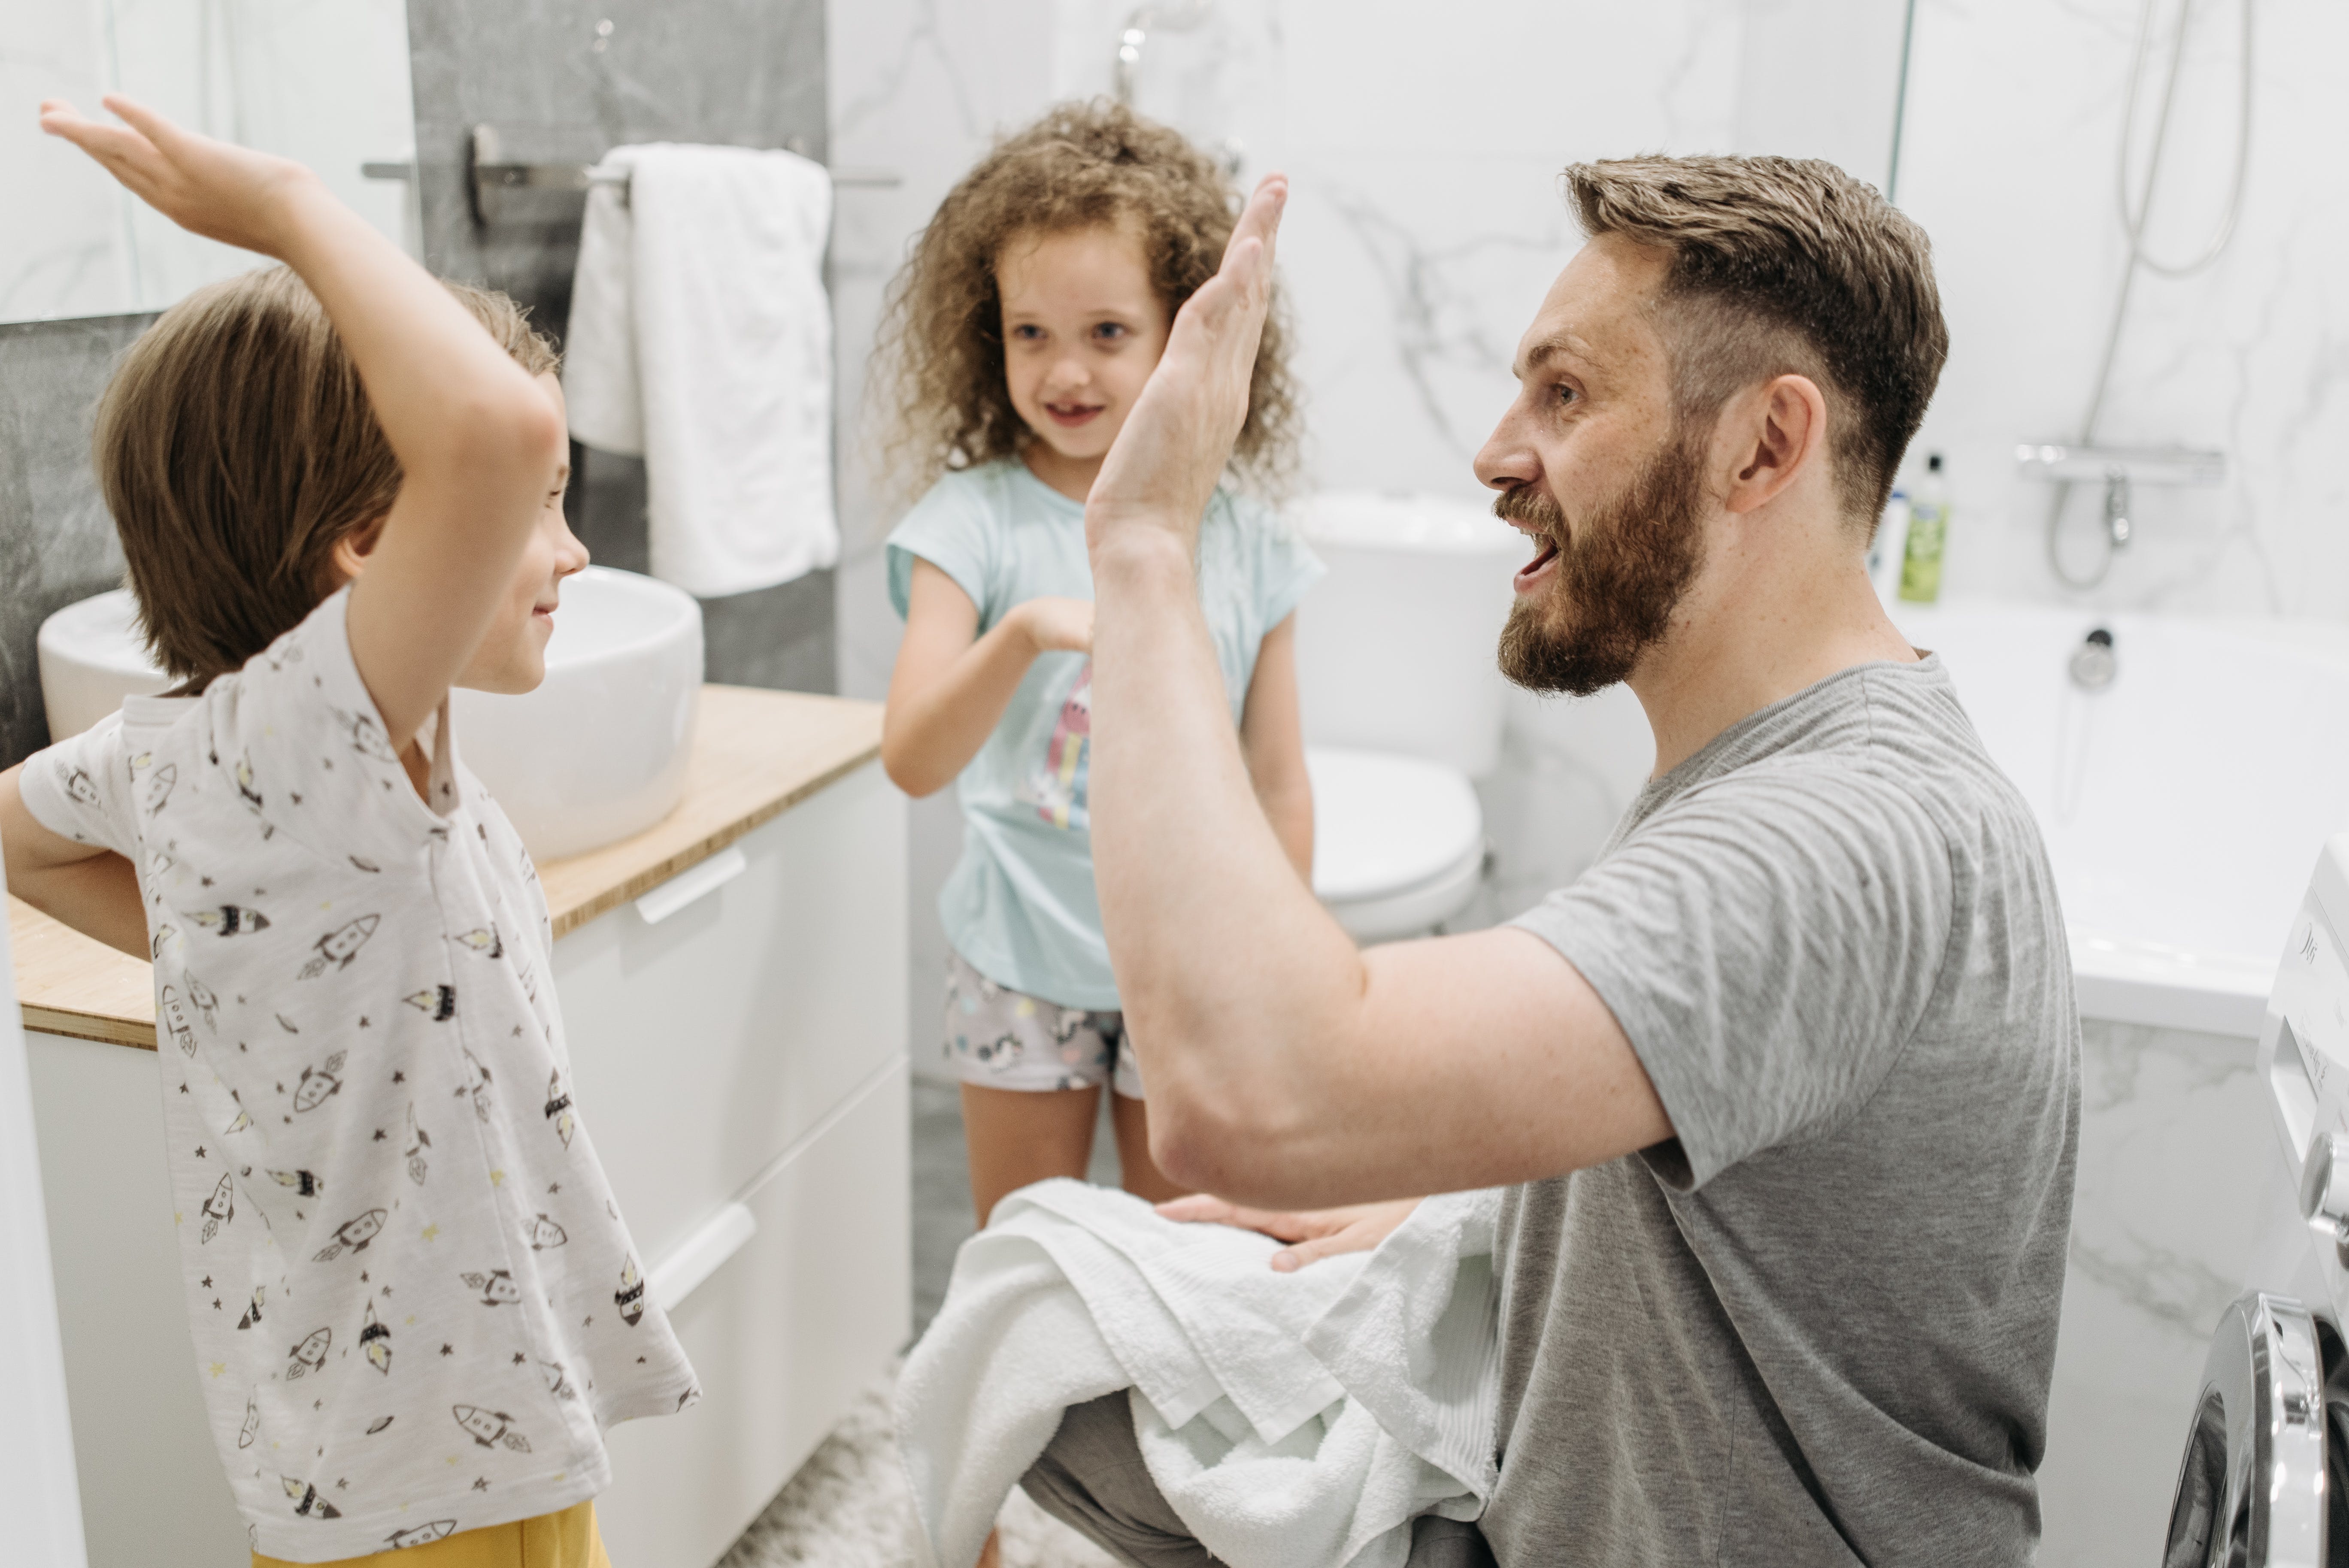 Un homme fait un high-five à un enfant tandis qu'une autre le regarde dans la salle de bain | Source : Pexels